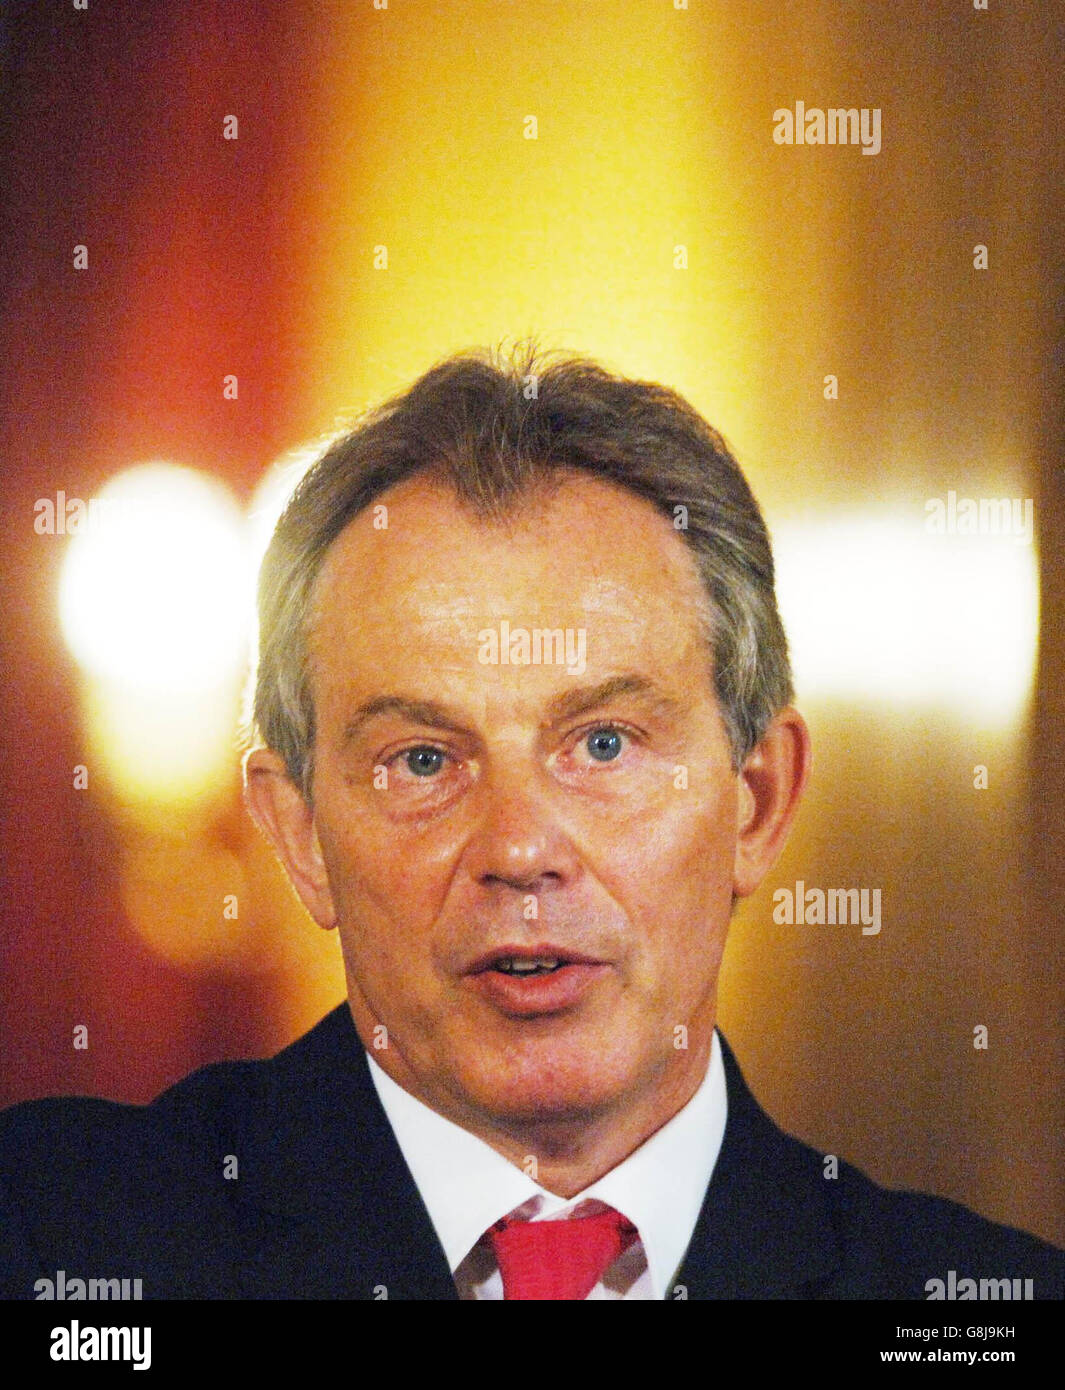 Premierminister Tony Blair veranstaltet seine letzte Pressekonferenz vor seiner Sommerpause im State Dining Room seiner offiziellen Residenz 10 Downing Street. Stockfoto